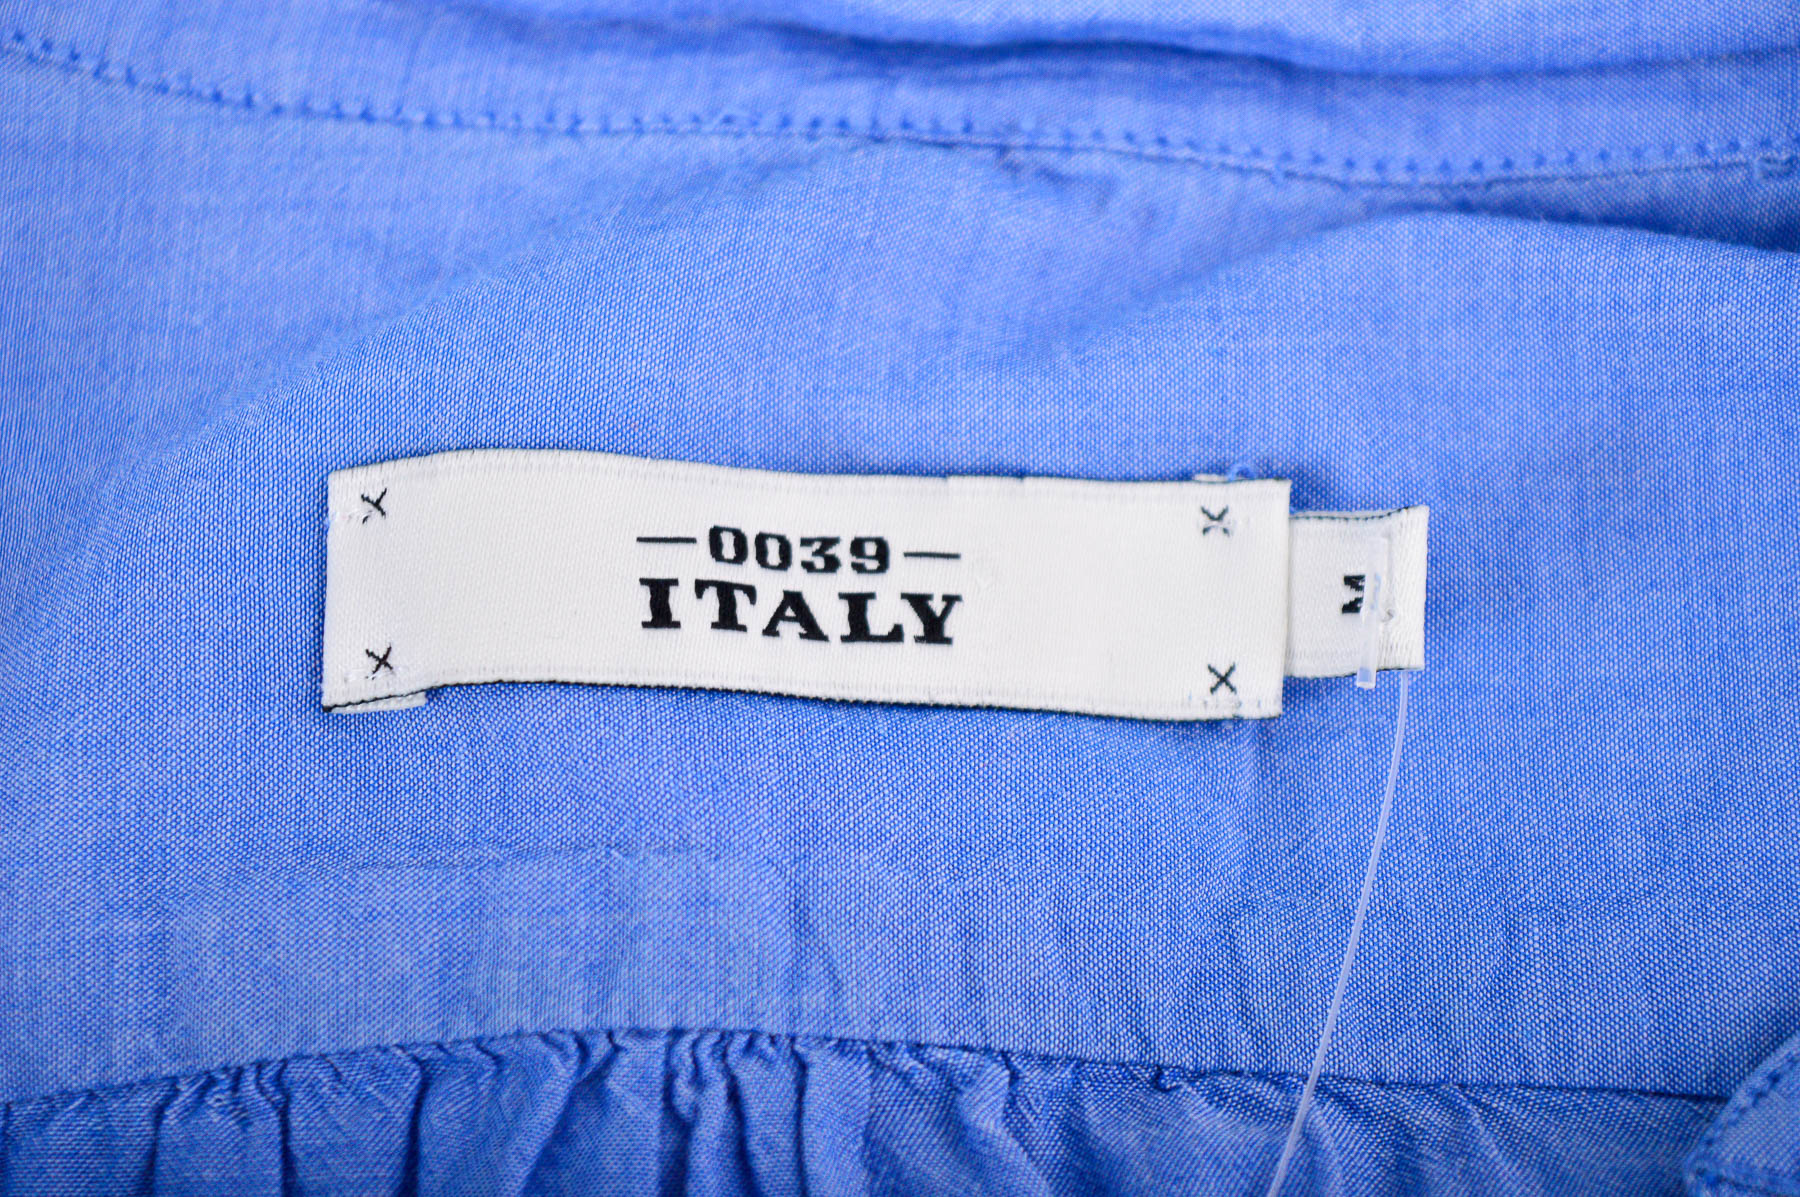 Γυναικείо πουκάμισο - 0039 Italy - 2